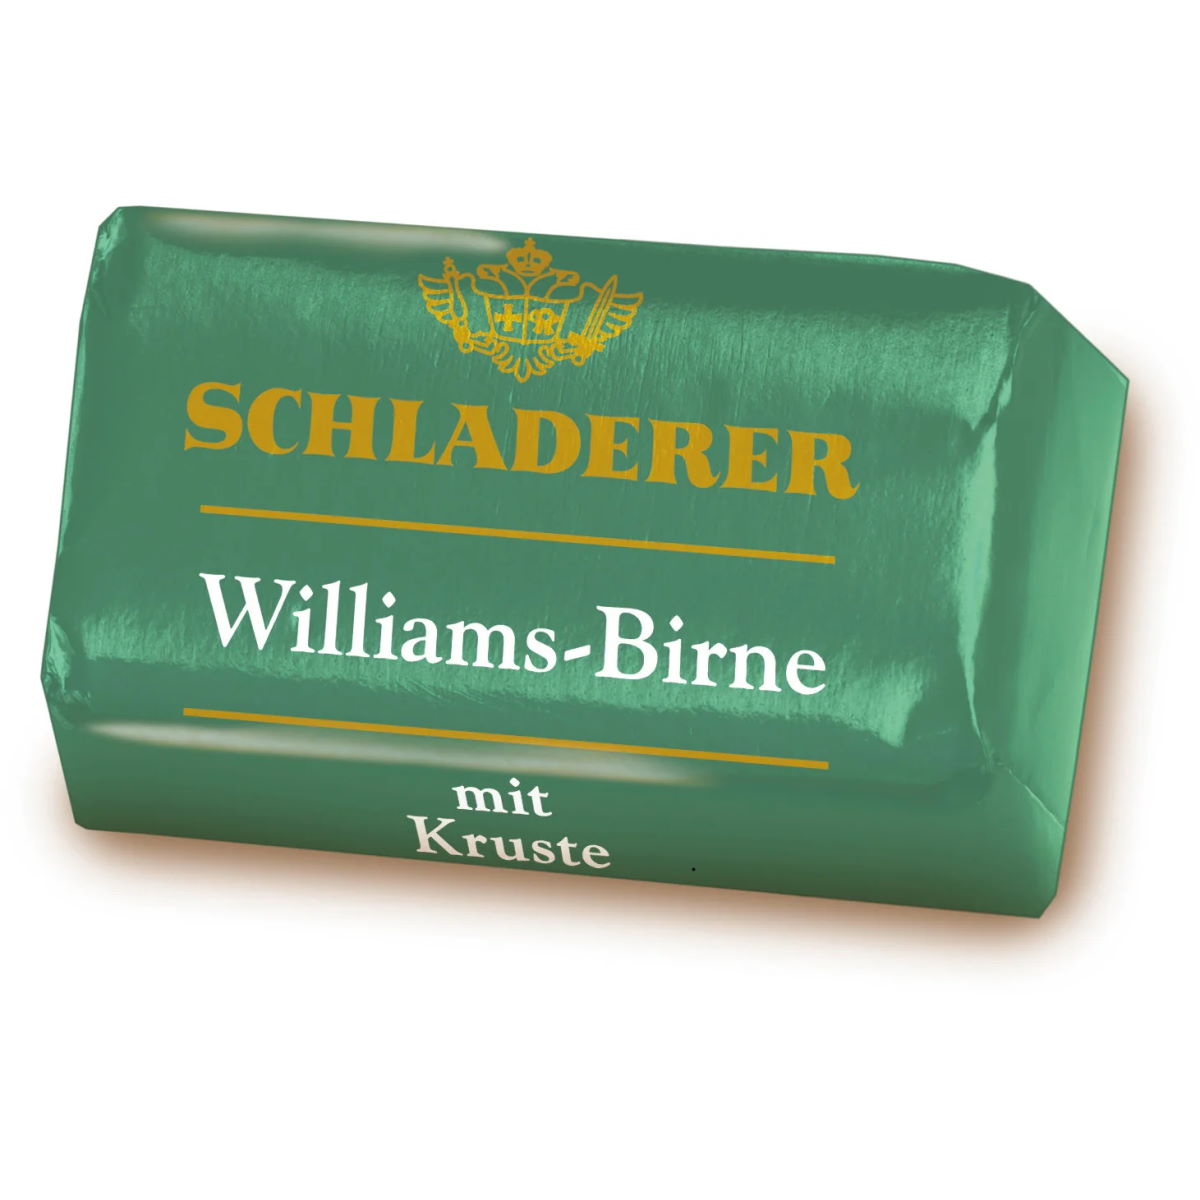 Schladerer 12-Piece Dark Chocolate Pralines with Williams-Birne Pear Brandy